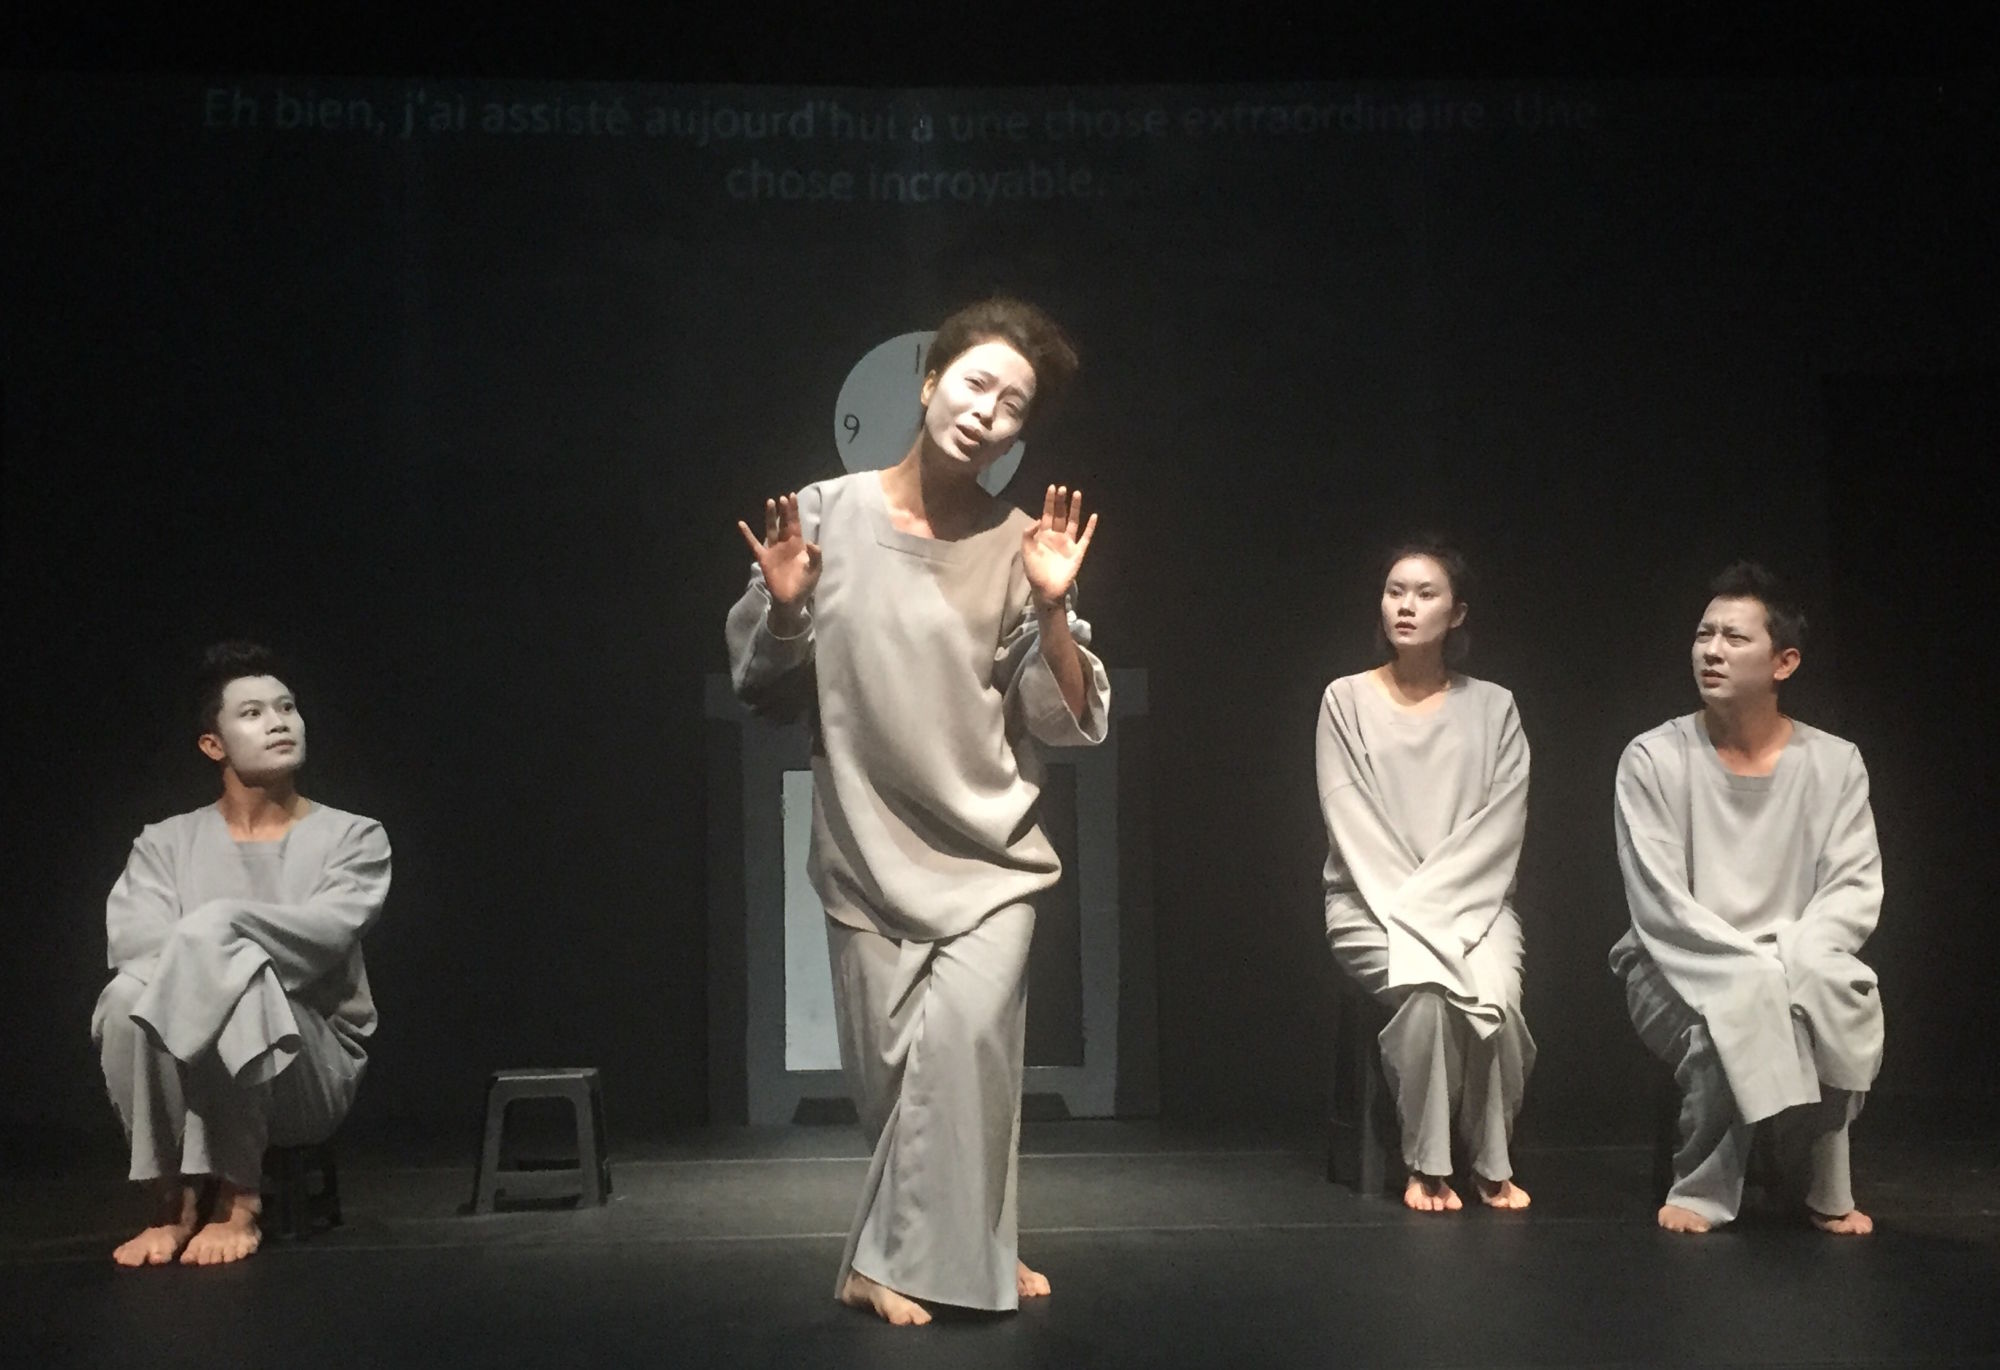 Les dialogues dans la pièce « La Cantatrice chauve » se détraquent. Photo : Vietnam+